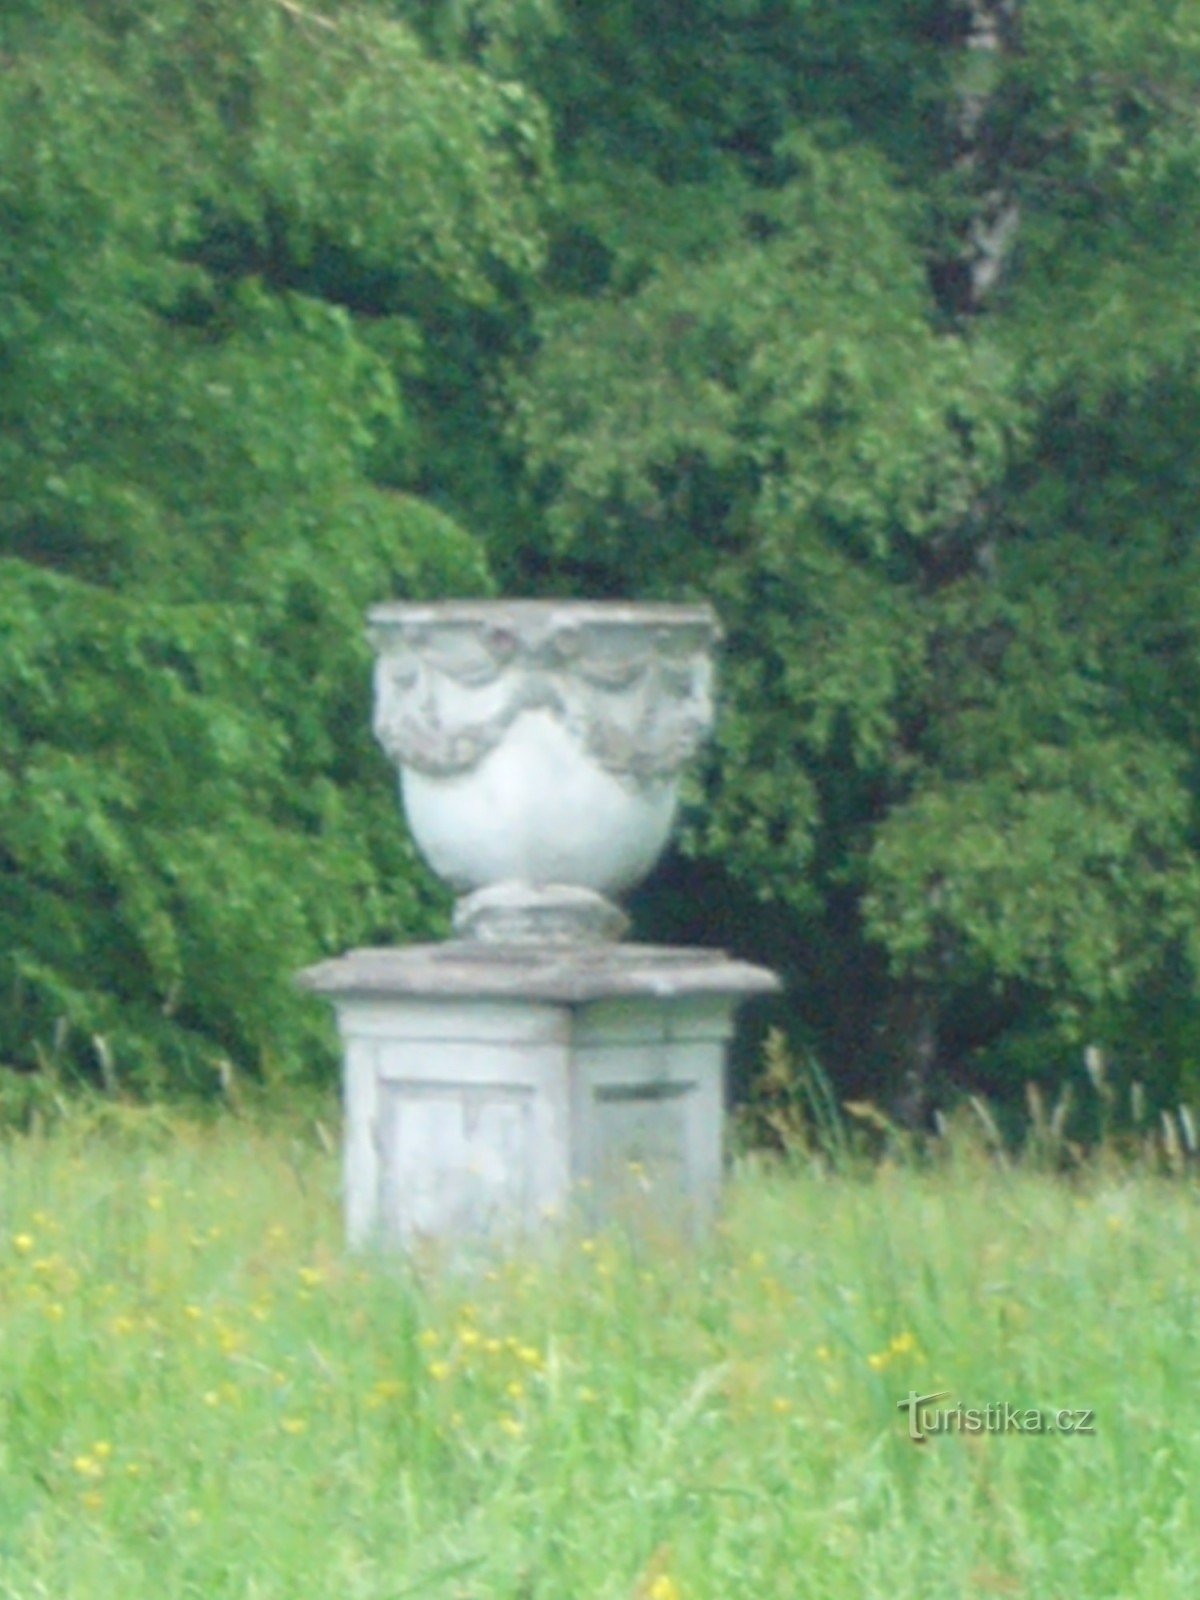 Dobroslavice - castle park, baroque vase